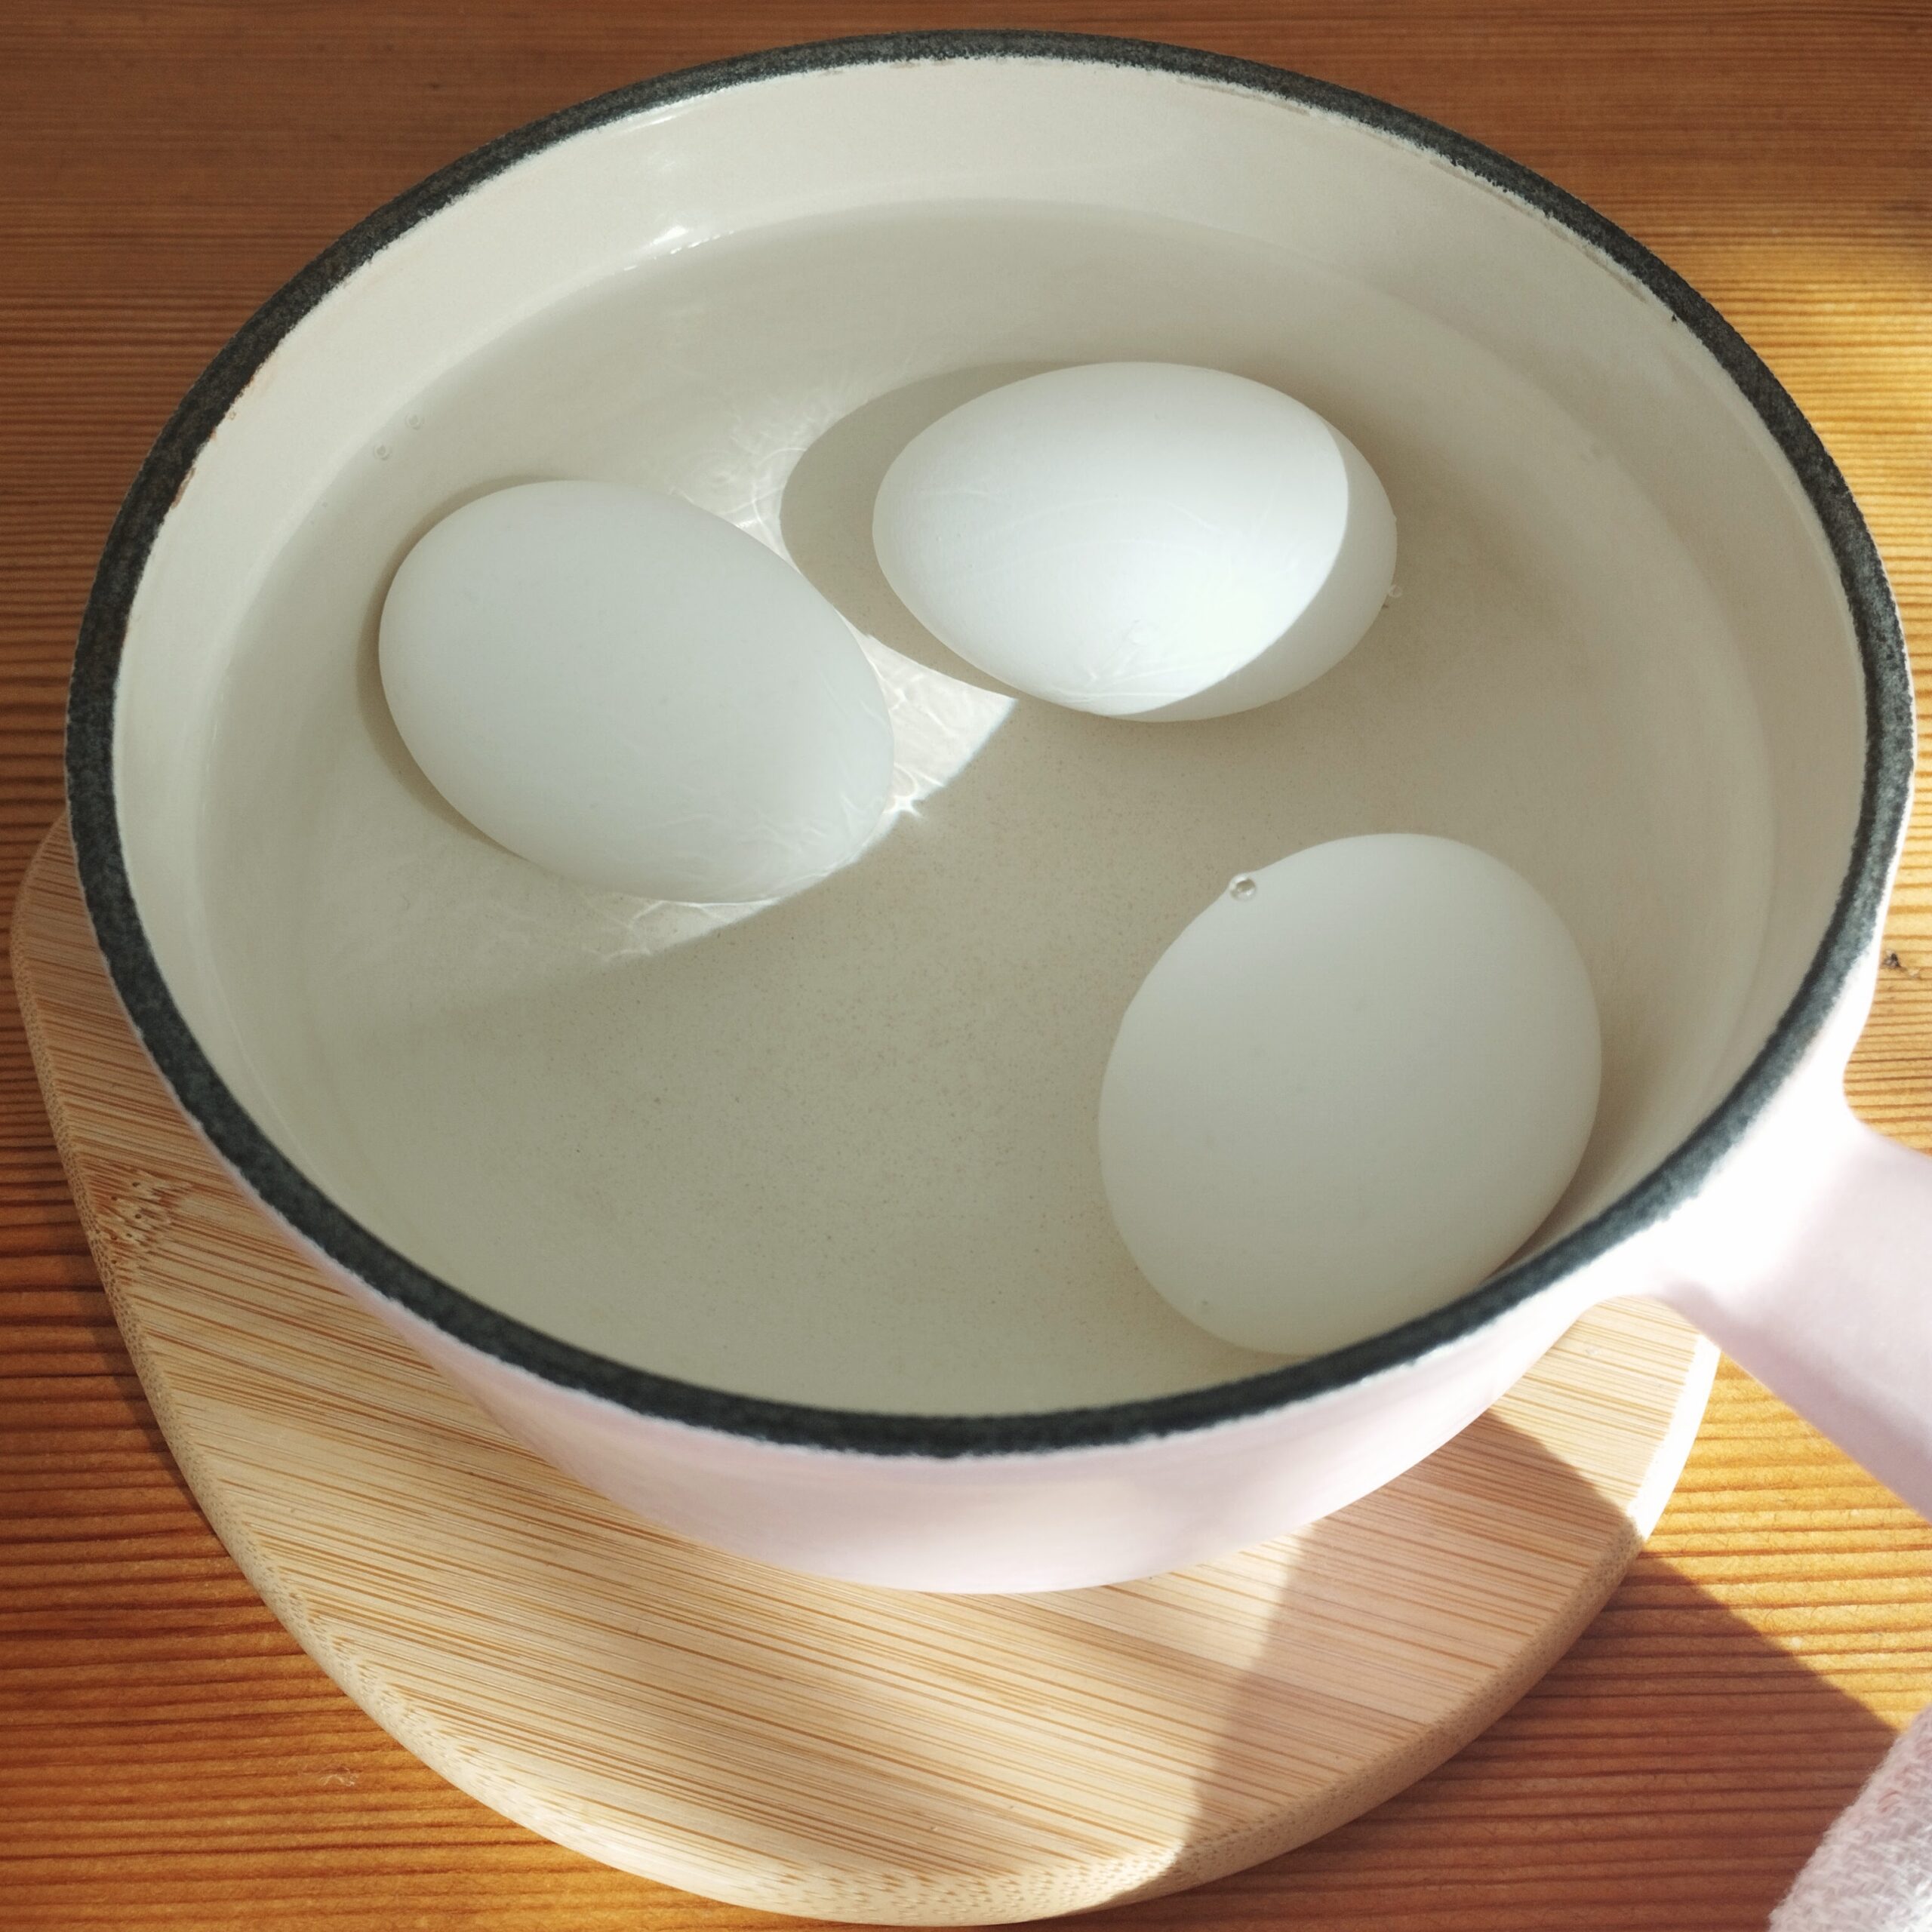 ルクルーゼの片手鍋で温泉卵をつくっている写真です